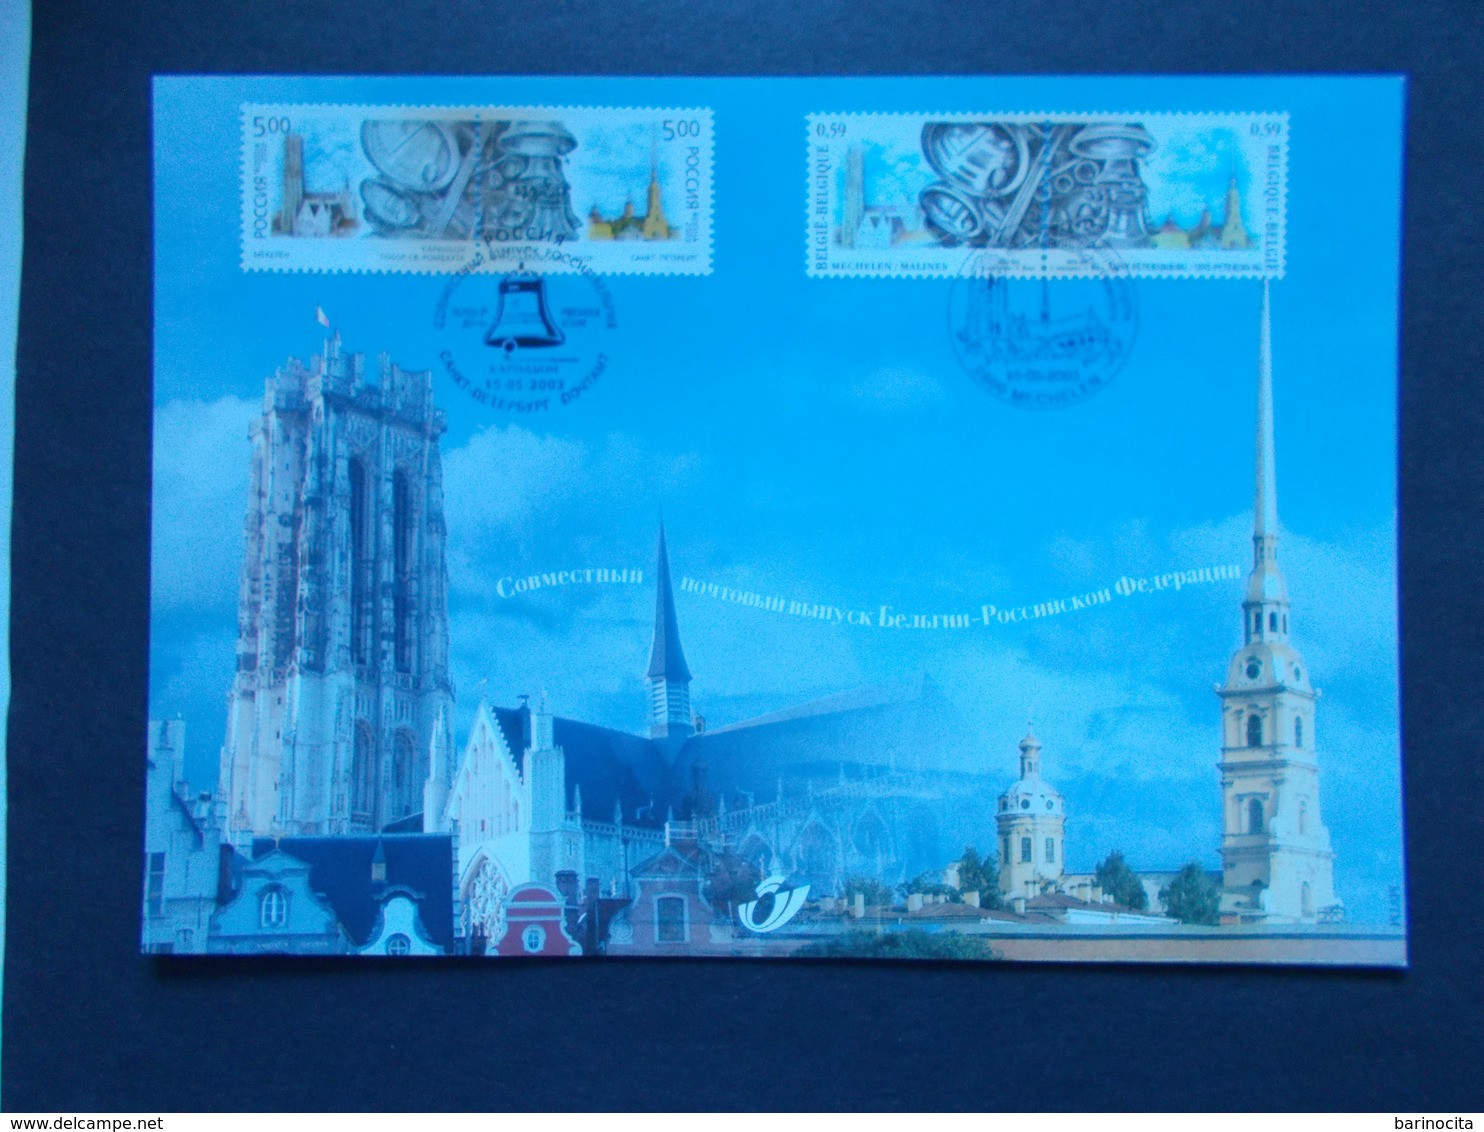 BELGIQUE -   N° 3170  HK  Année  2003   EMISSIONS  COMMUNES  RUSSIE    ( Voir Photo ) 68 - Cartas Commemorativas - Emisiones Comunes [HK]